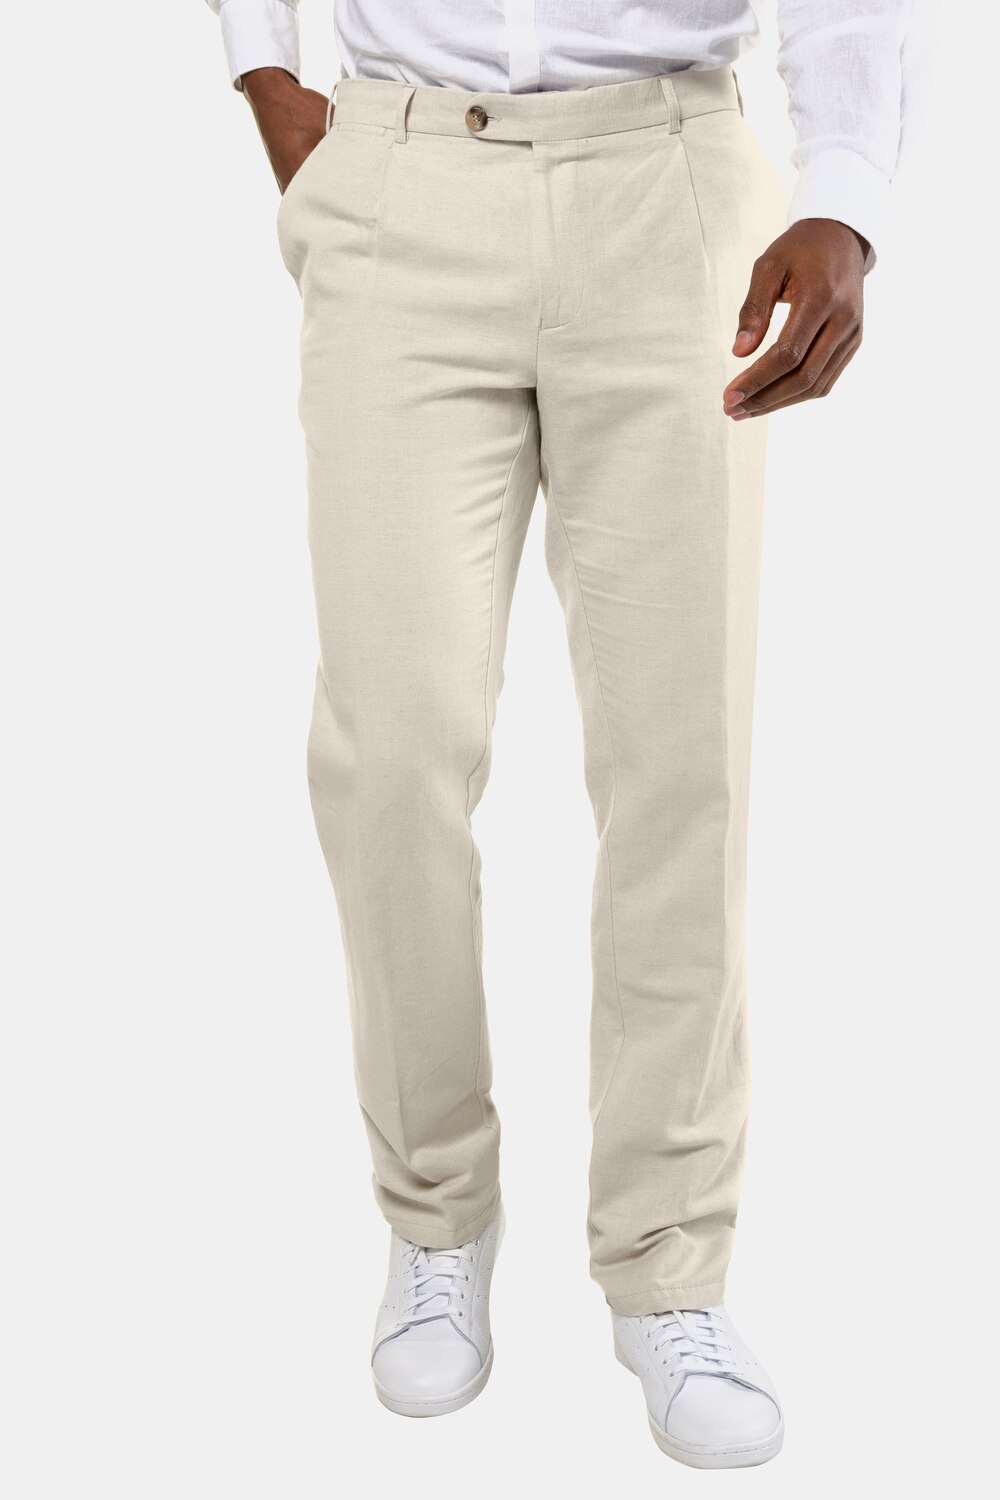 grandes tailles pantalon à pinces, hommes, beige, taille: 54, coton/lin, jp1880